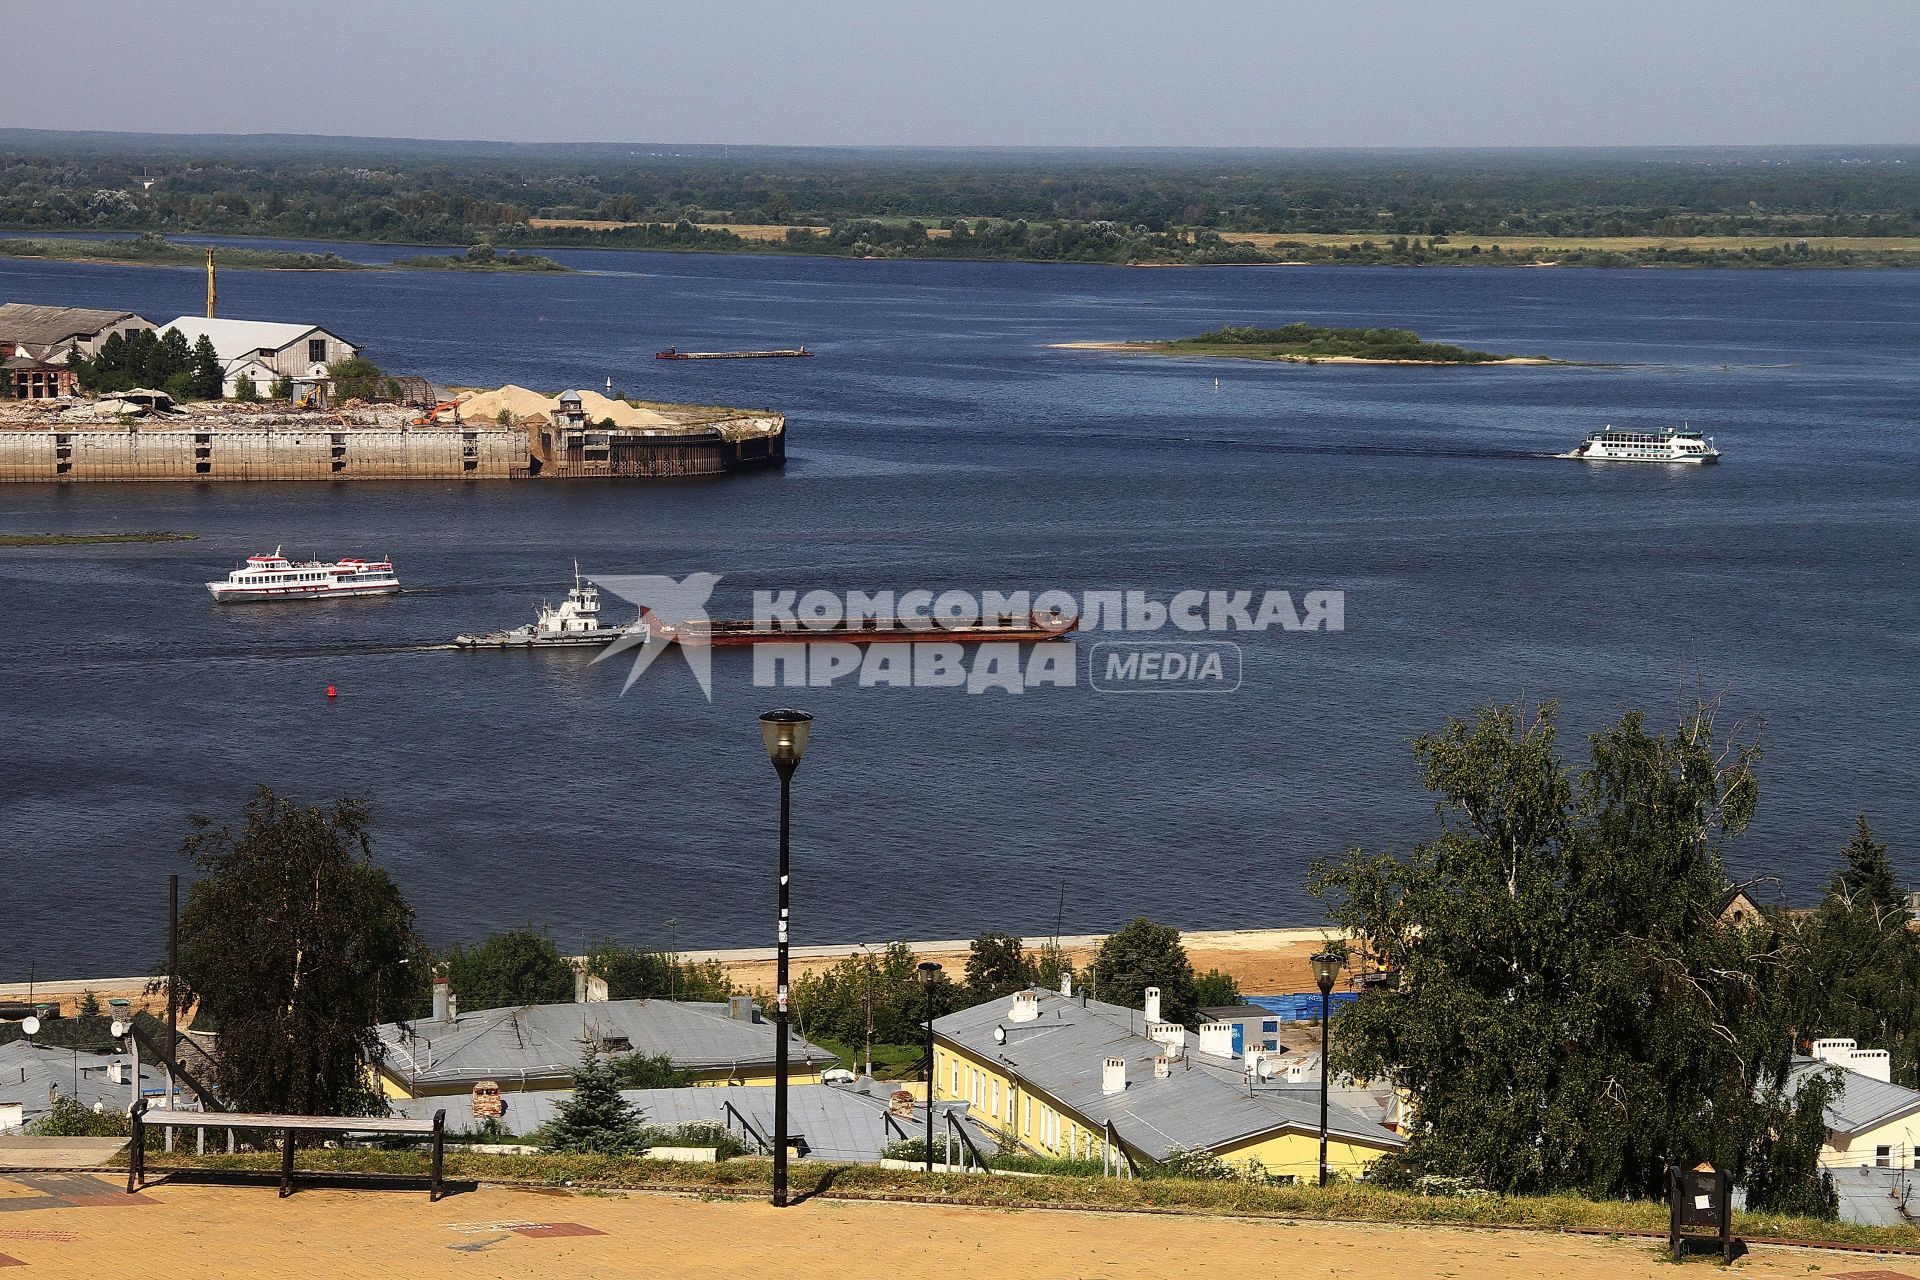 Нижний Новгород.   Вид   на слияние рек Ока и Волга.